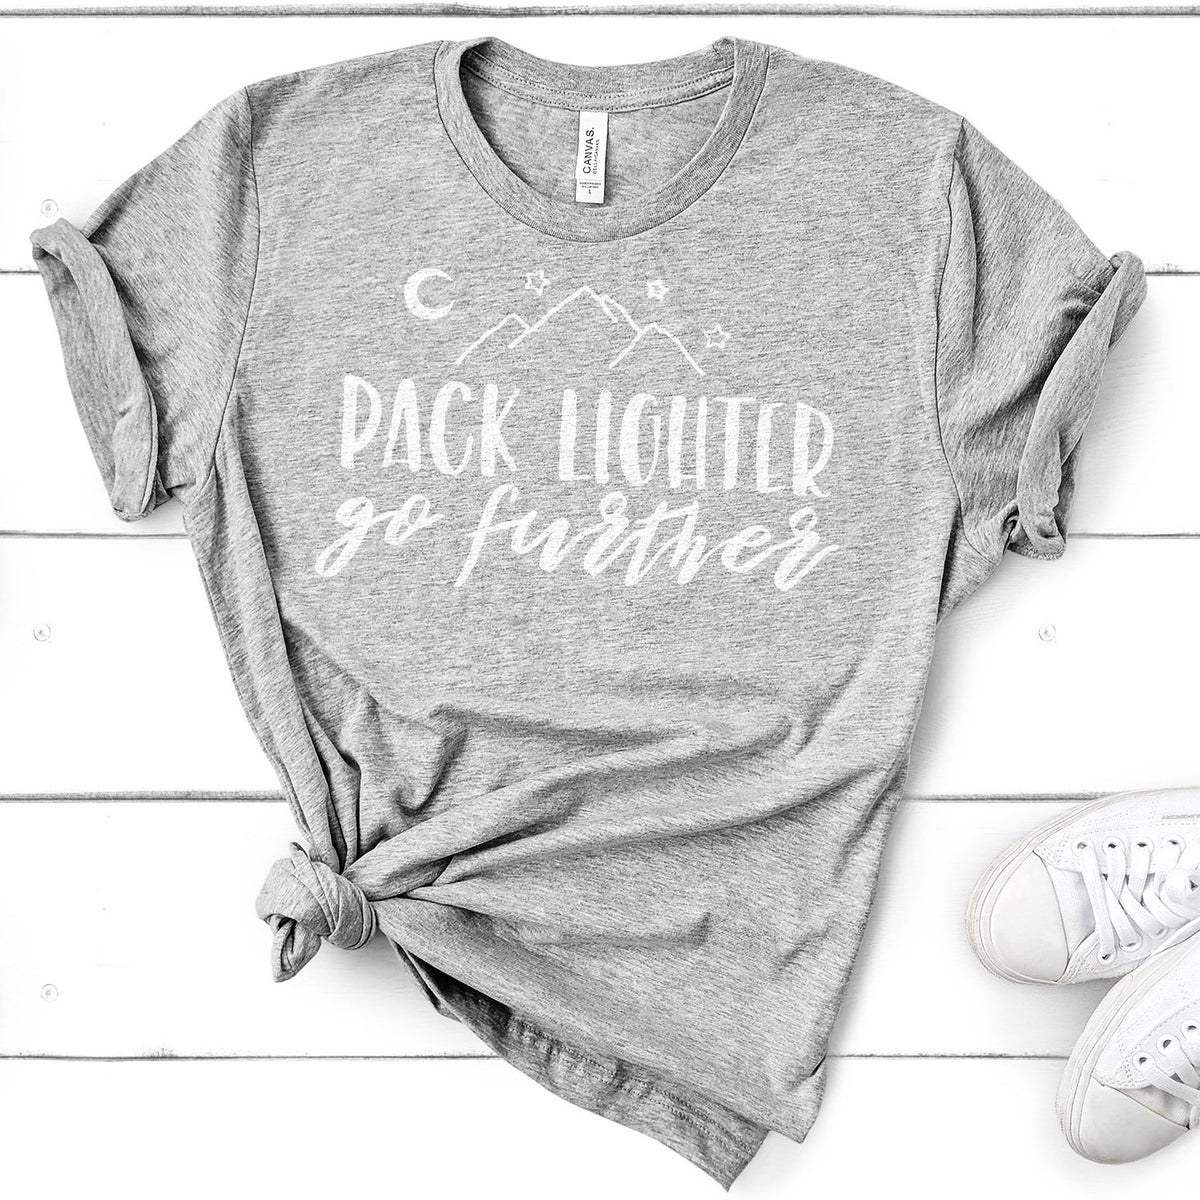 Pack Lighter Go Further - Short Sleeve Tee Shirt